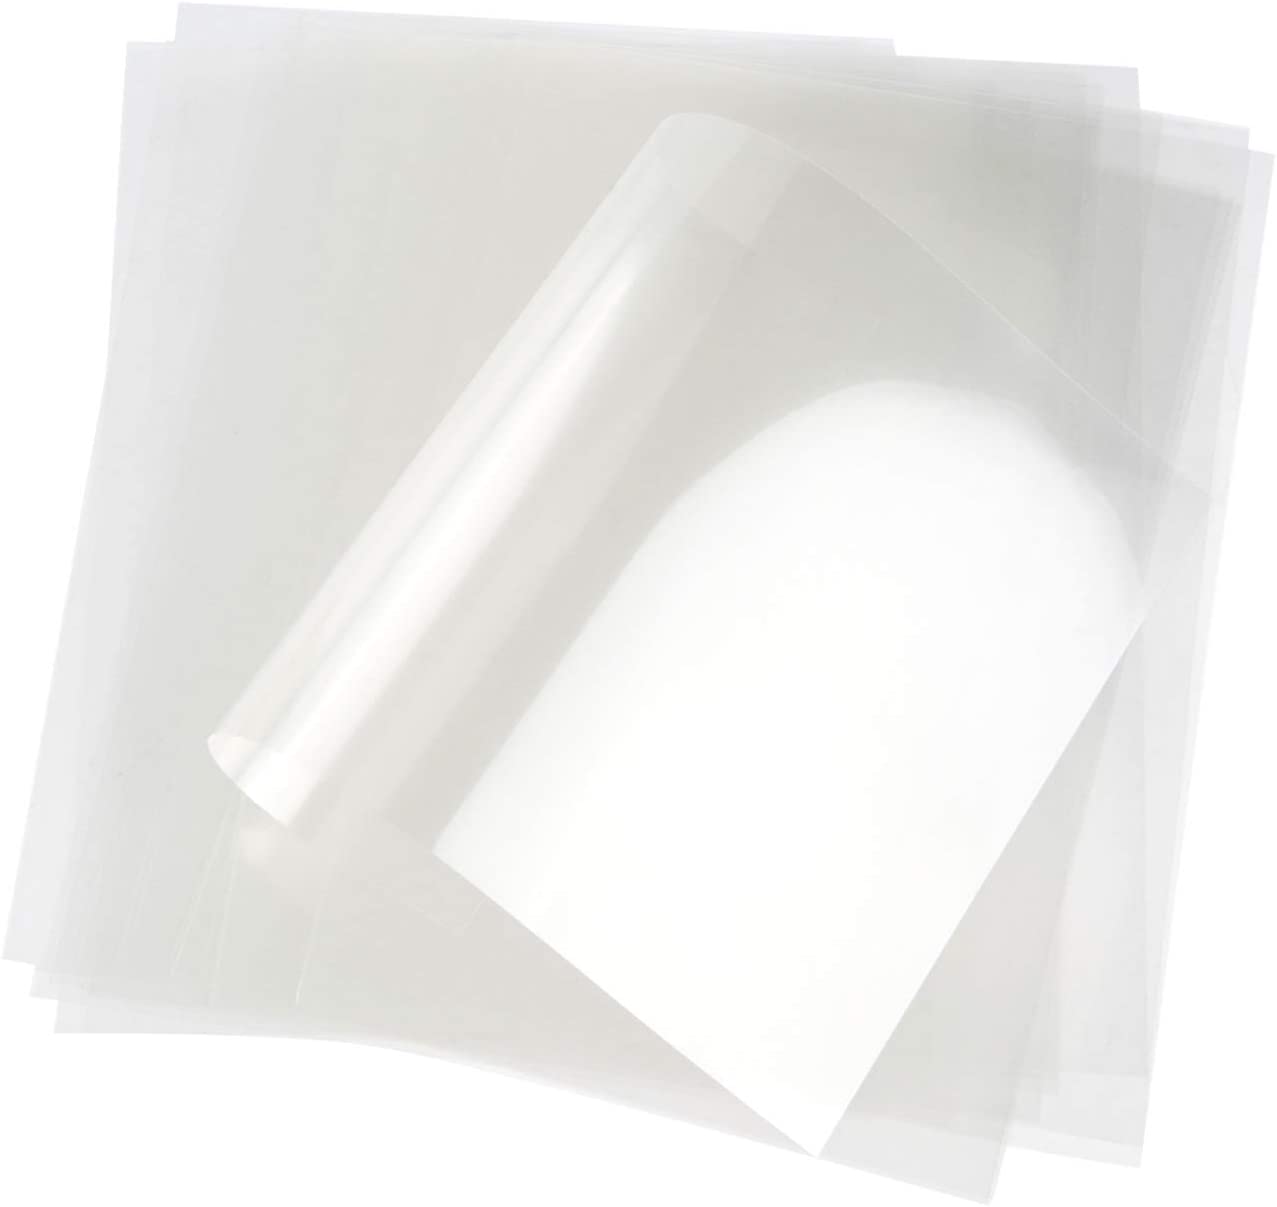  55 hojas de acetato transparente resistentes al calor de 8.5 x  11/4.3 x 6.3 pulgadas para estampado y estampado para ventanas, hojas de  plástico para manualidades, álbumes de recortes, tarjetas : Arte y  Manualidades